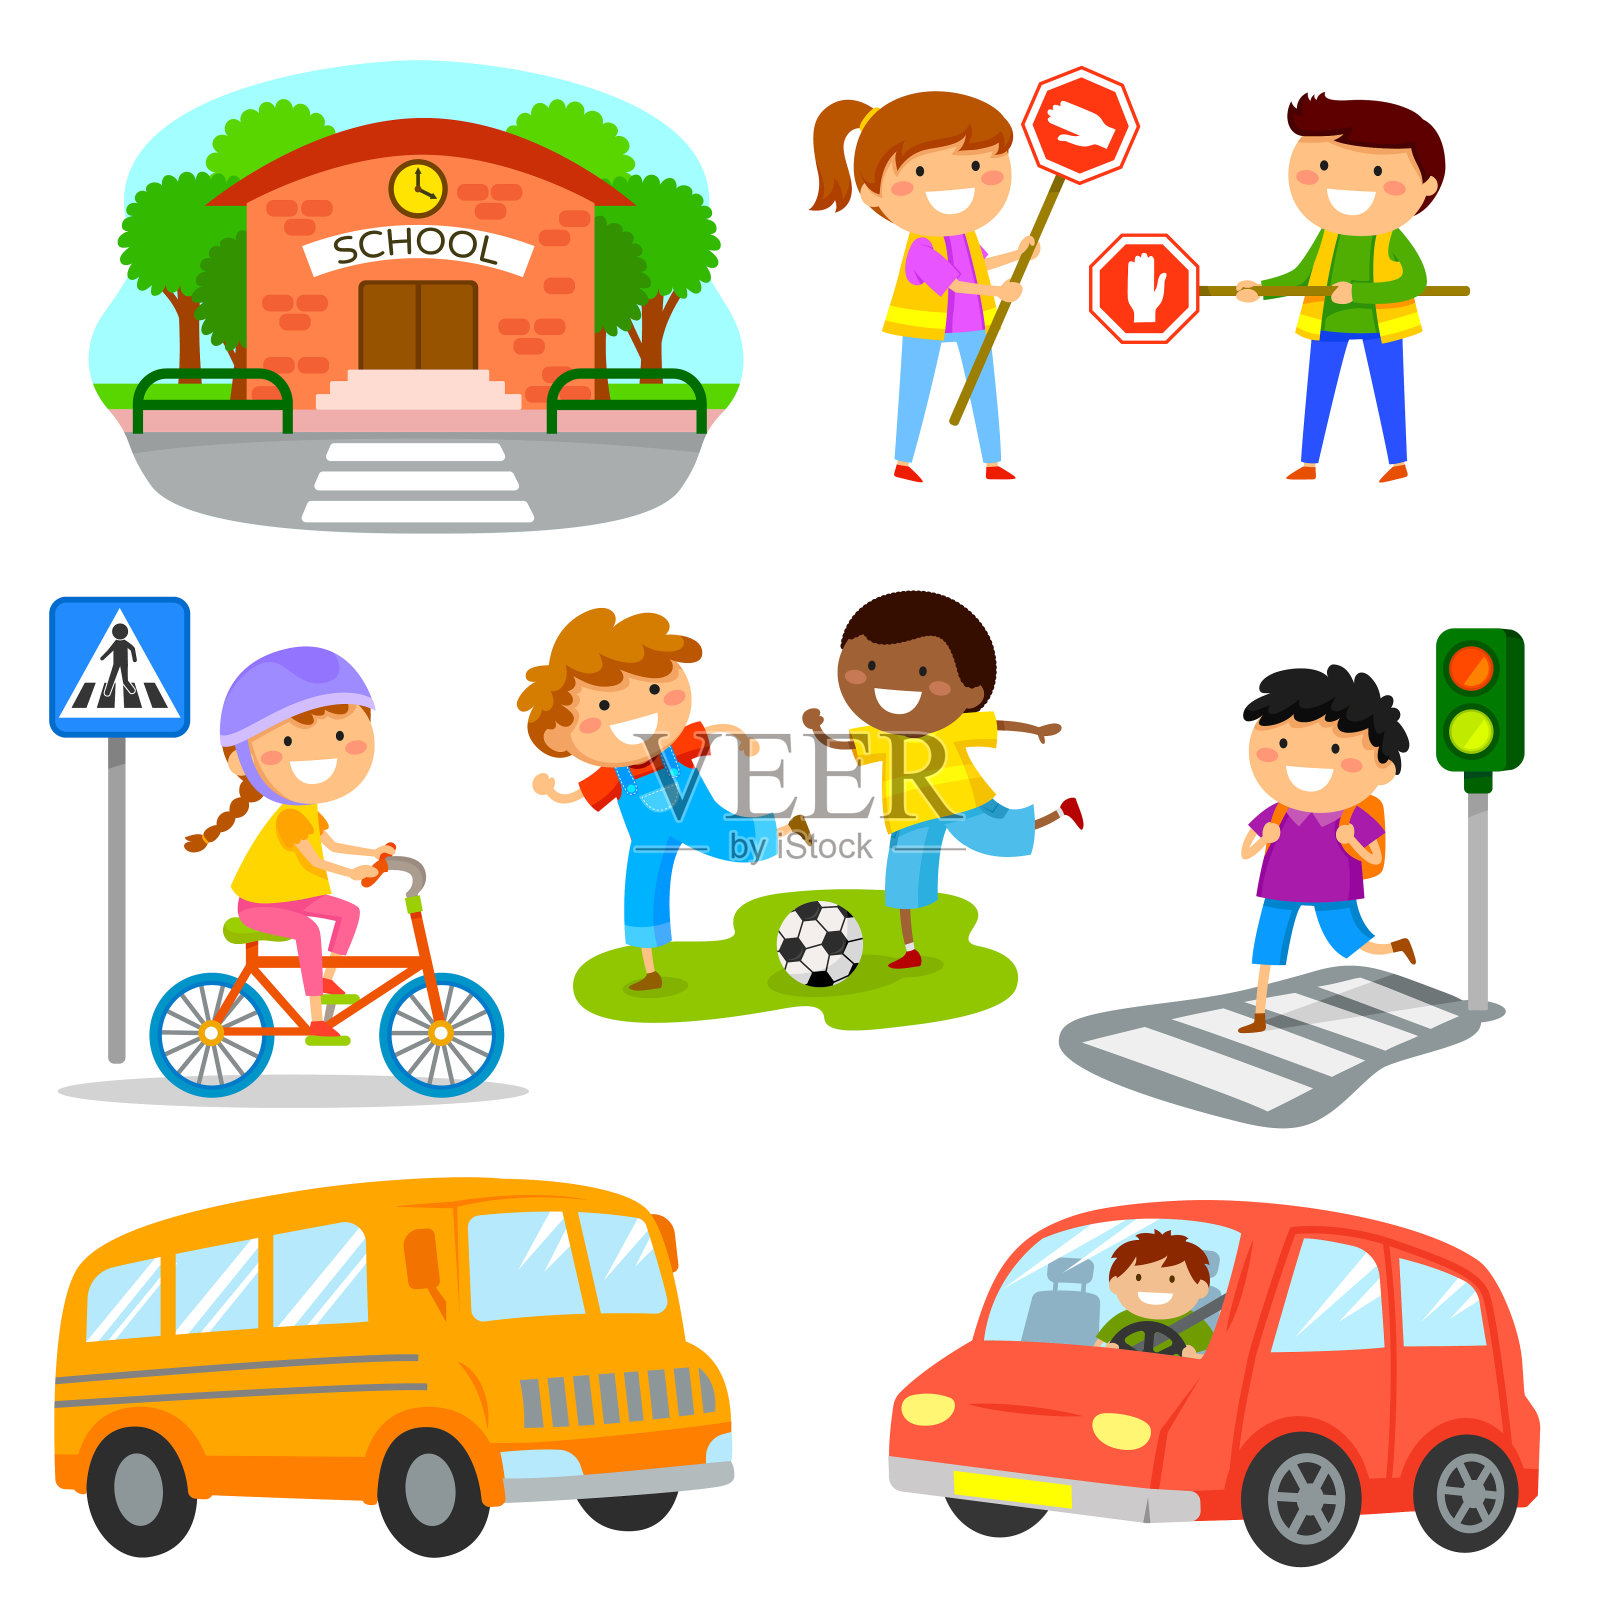 一套可爱的卡通儿童和物体有关的道路交通安全设计元素图片